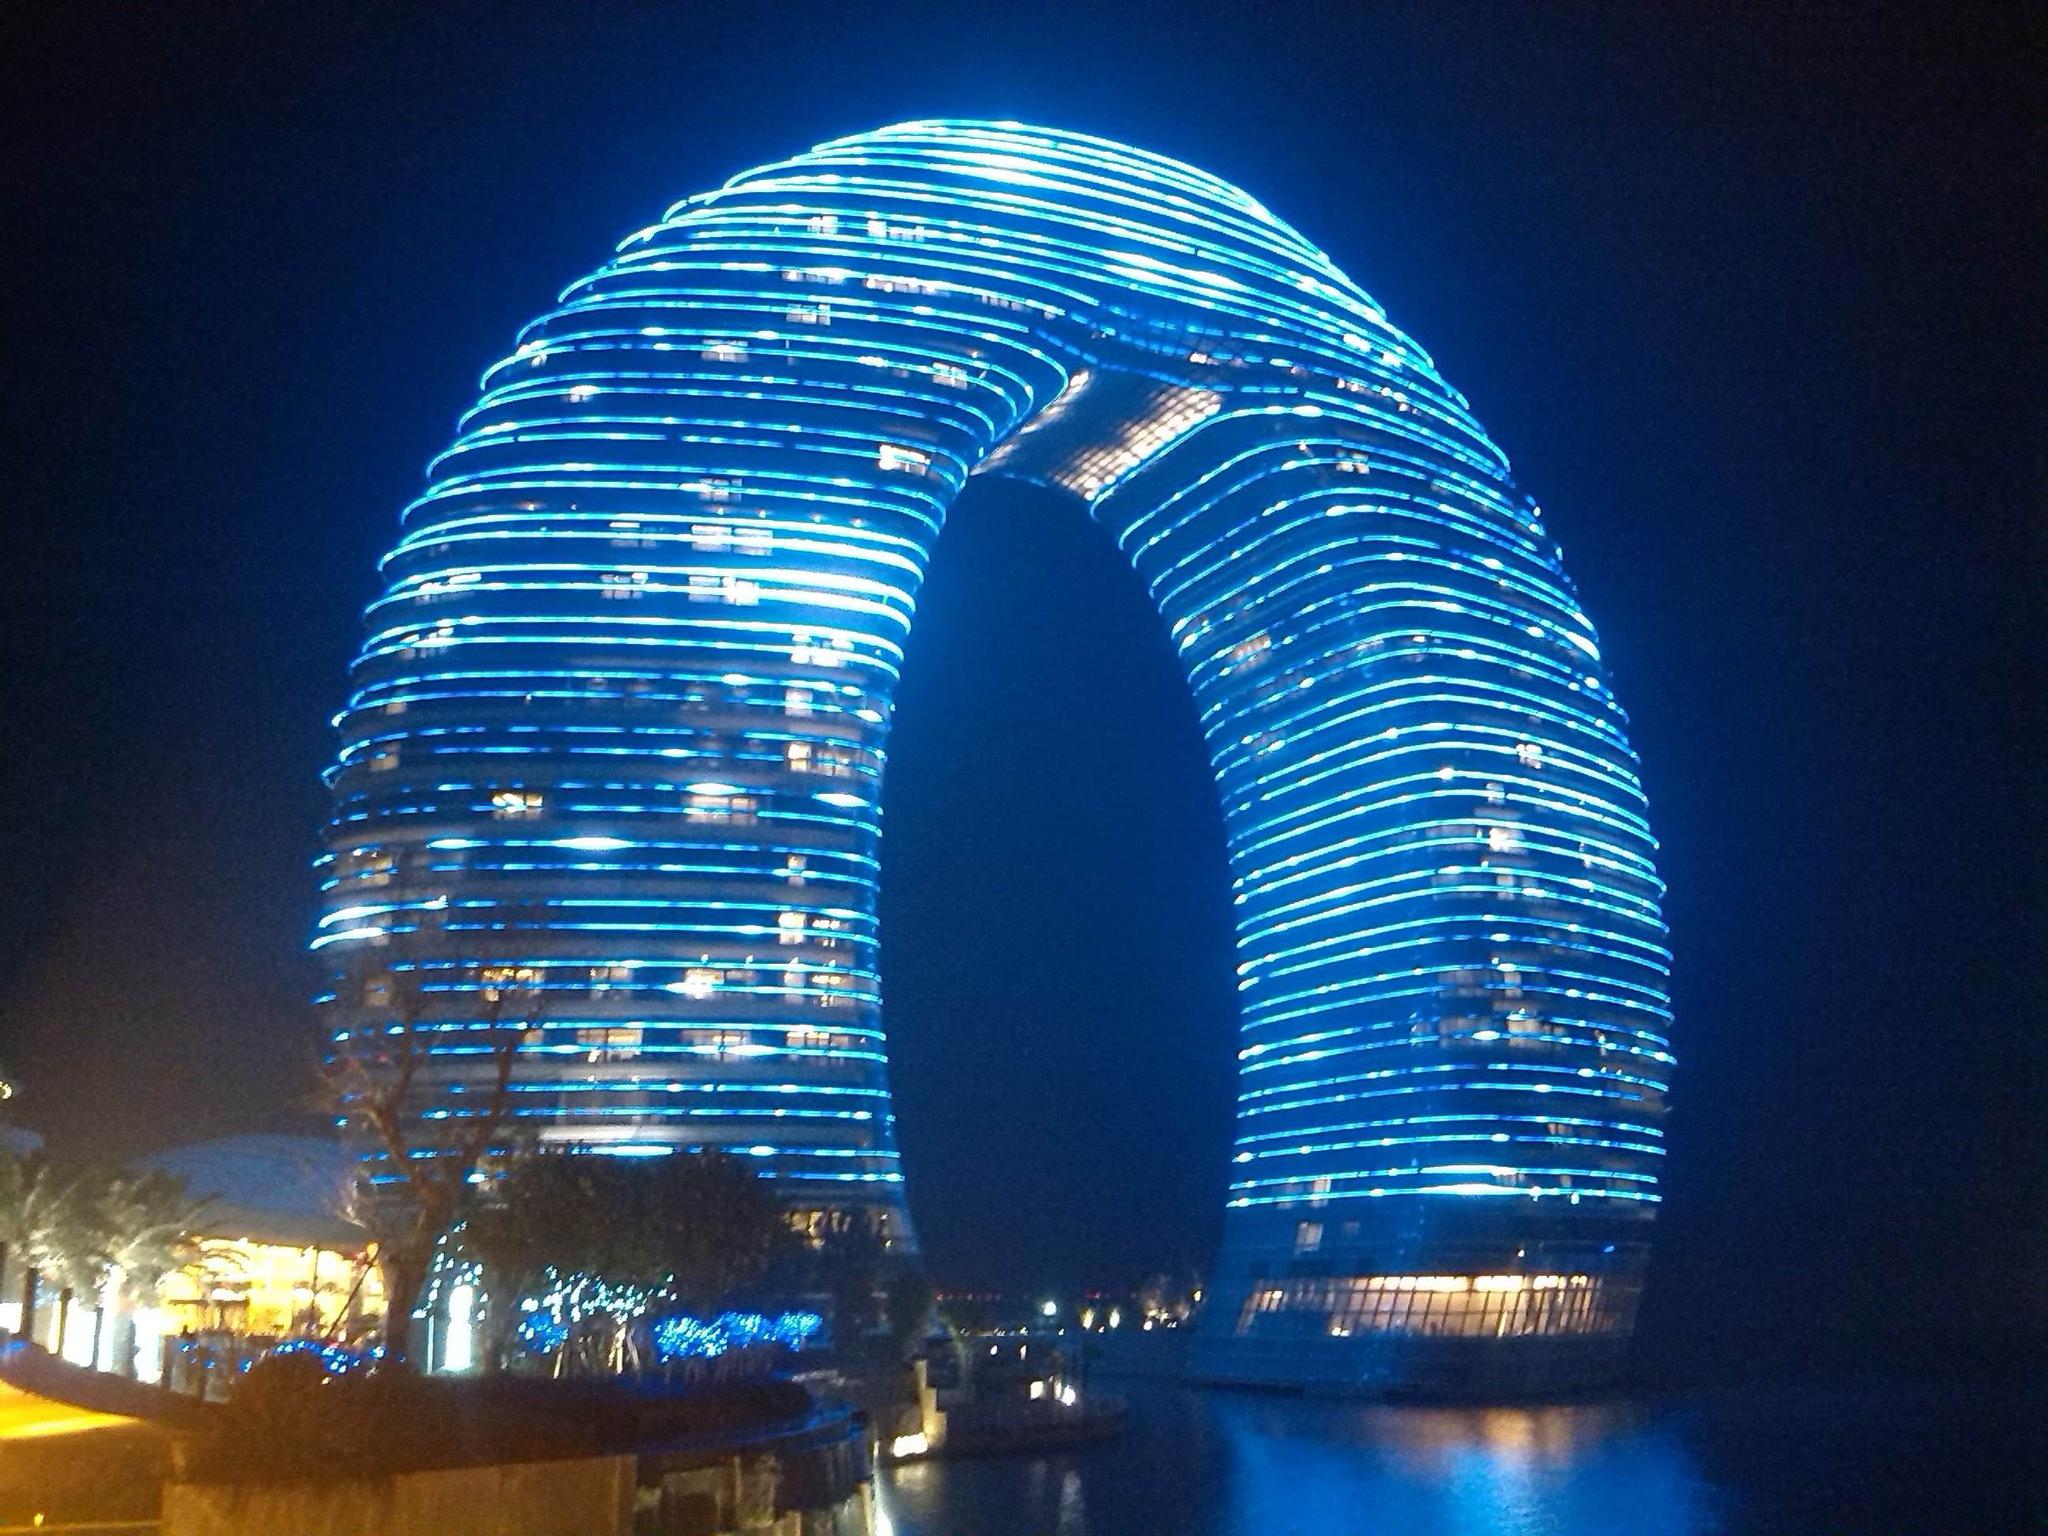 中国最具科技感的5座建筑,苏州,北京上榜,你见过几座?